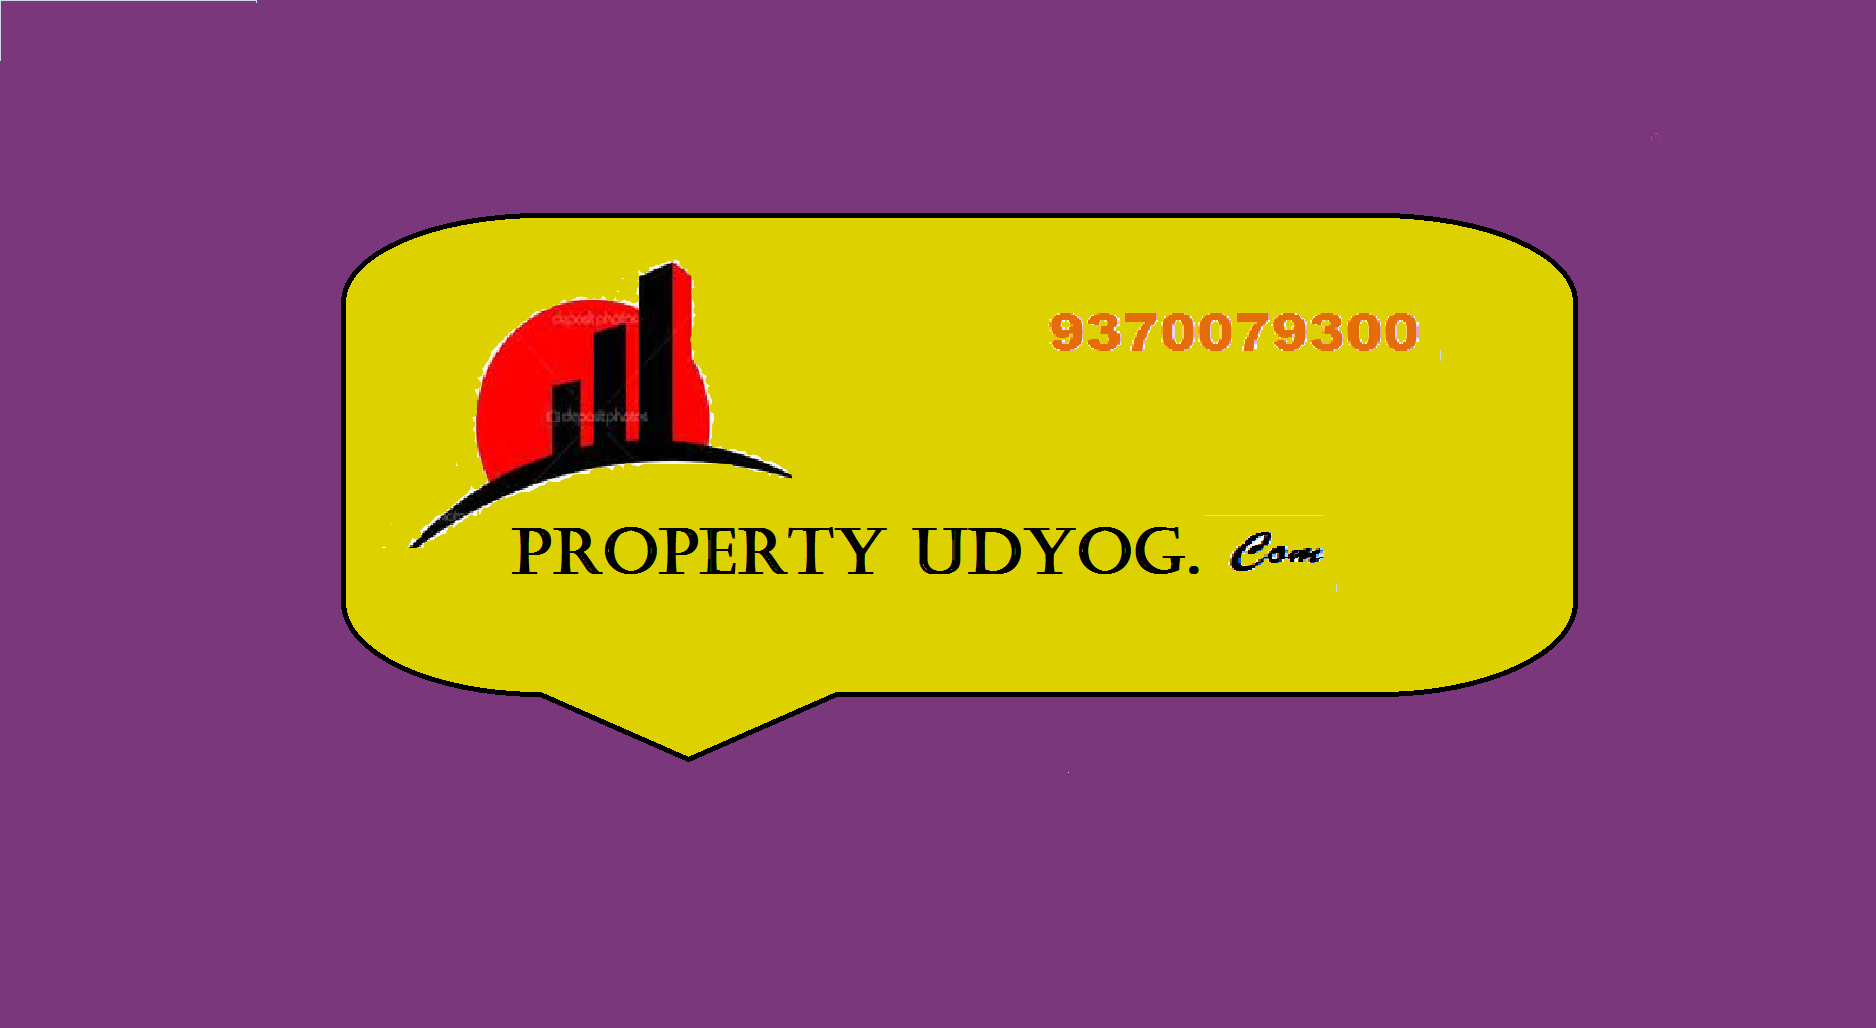 PropertyUdyog